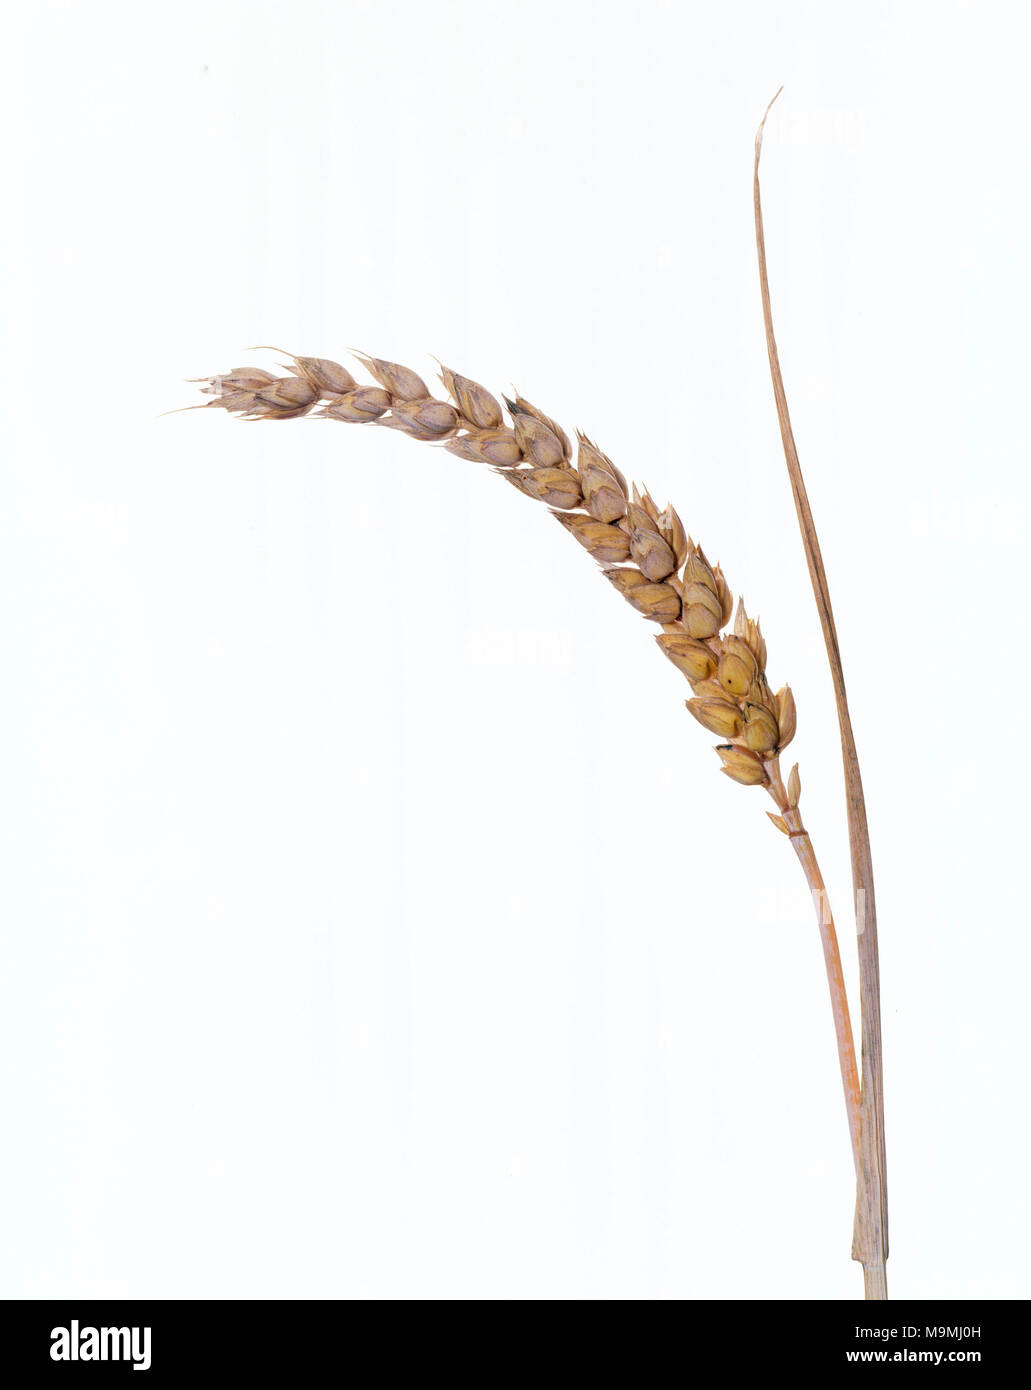 Le blé tendre, le blé tendre (Triticum aestivum), venu l'oreille. Studio photo contre un fond whote. Allemagne Banque D'Images